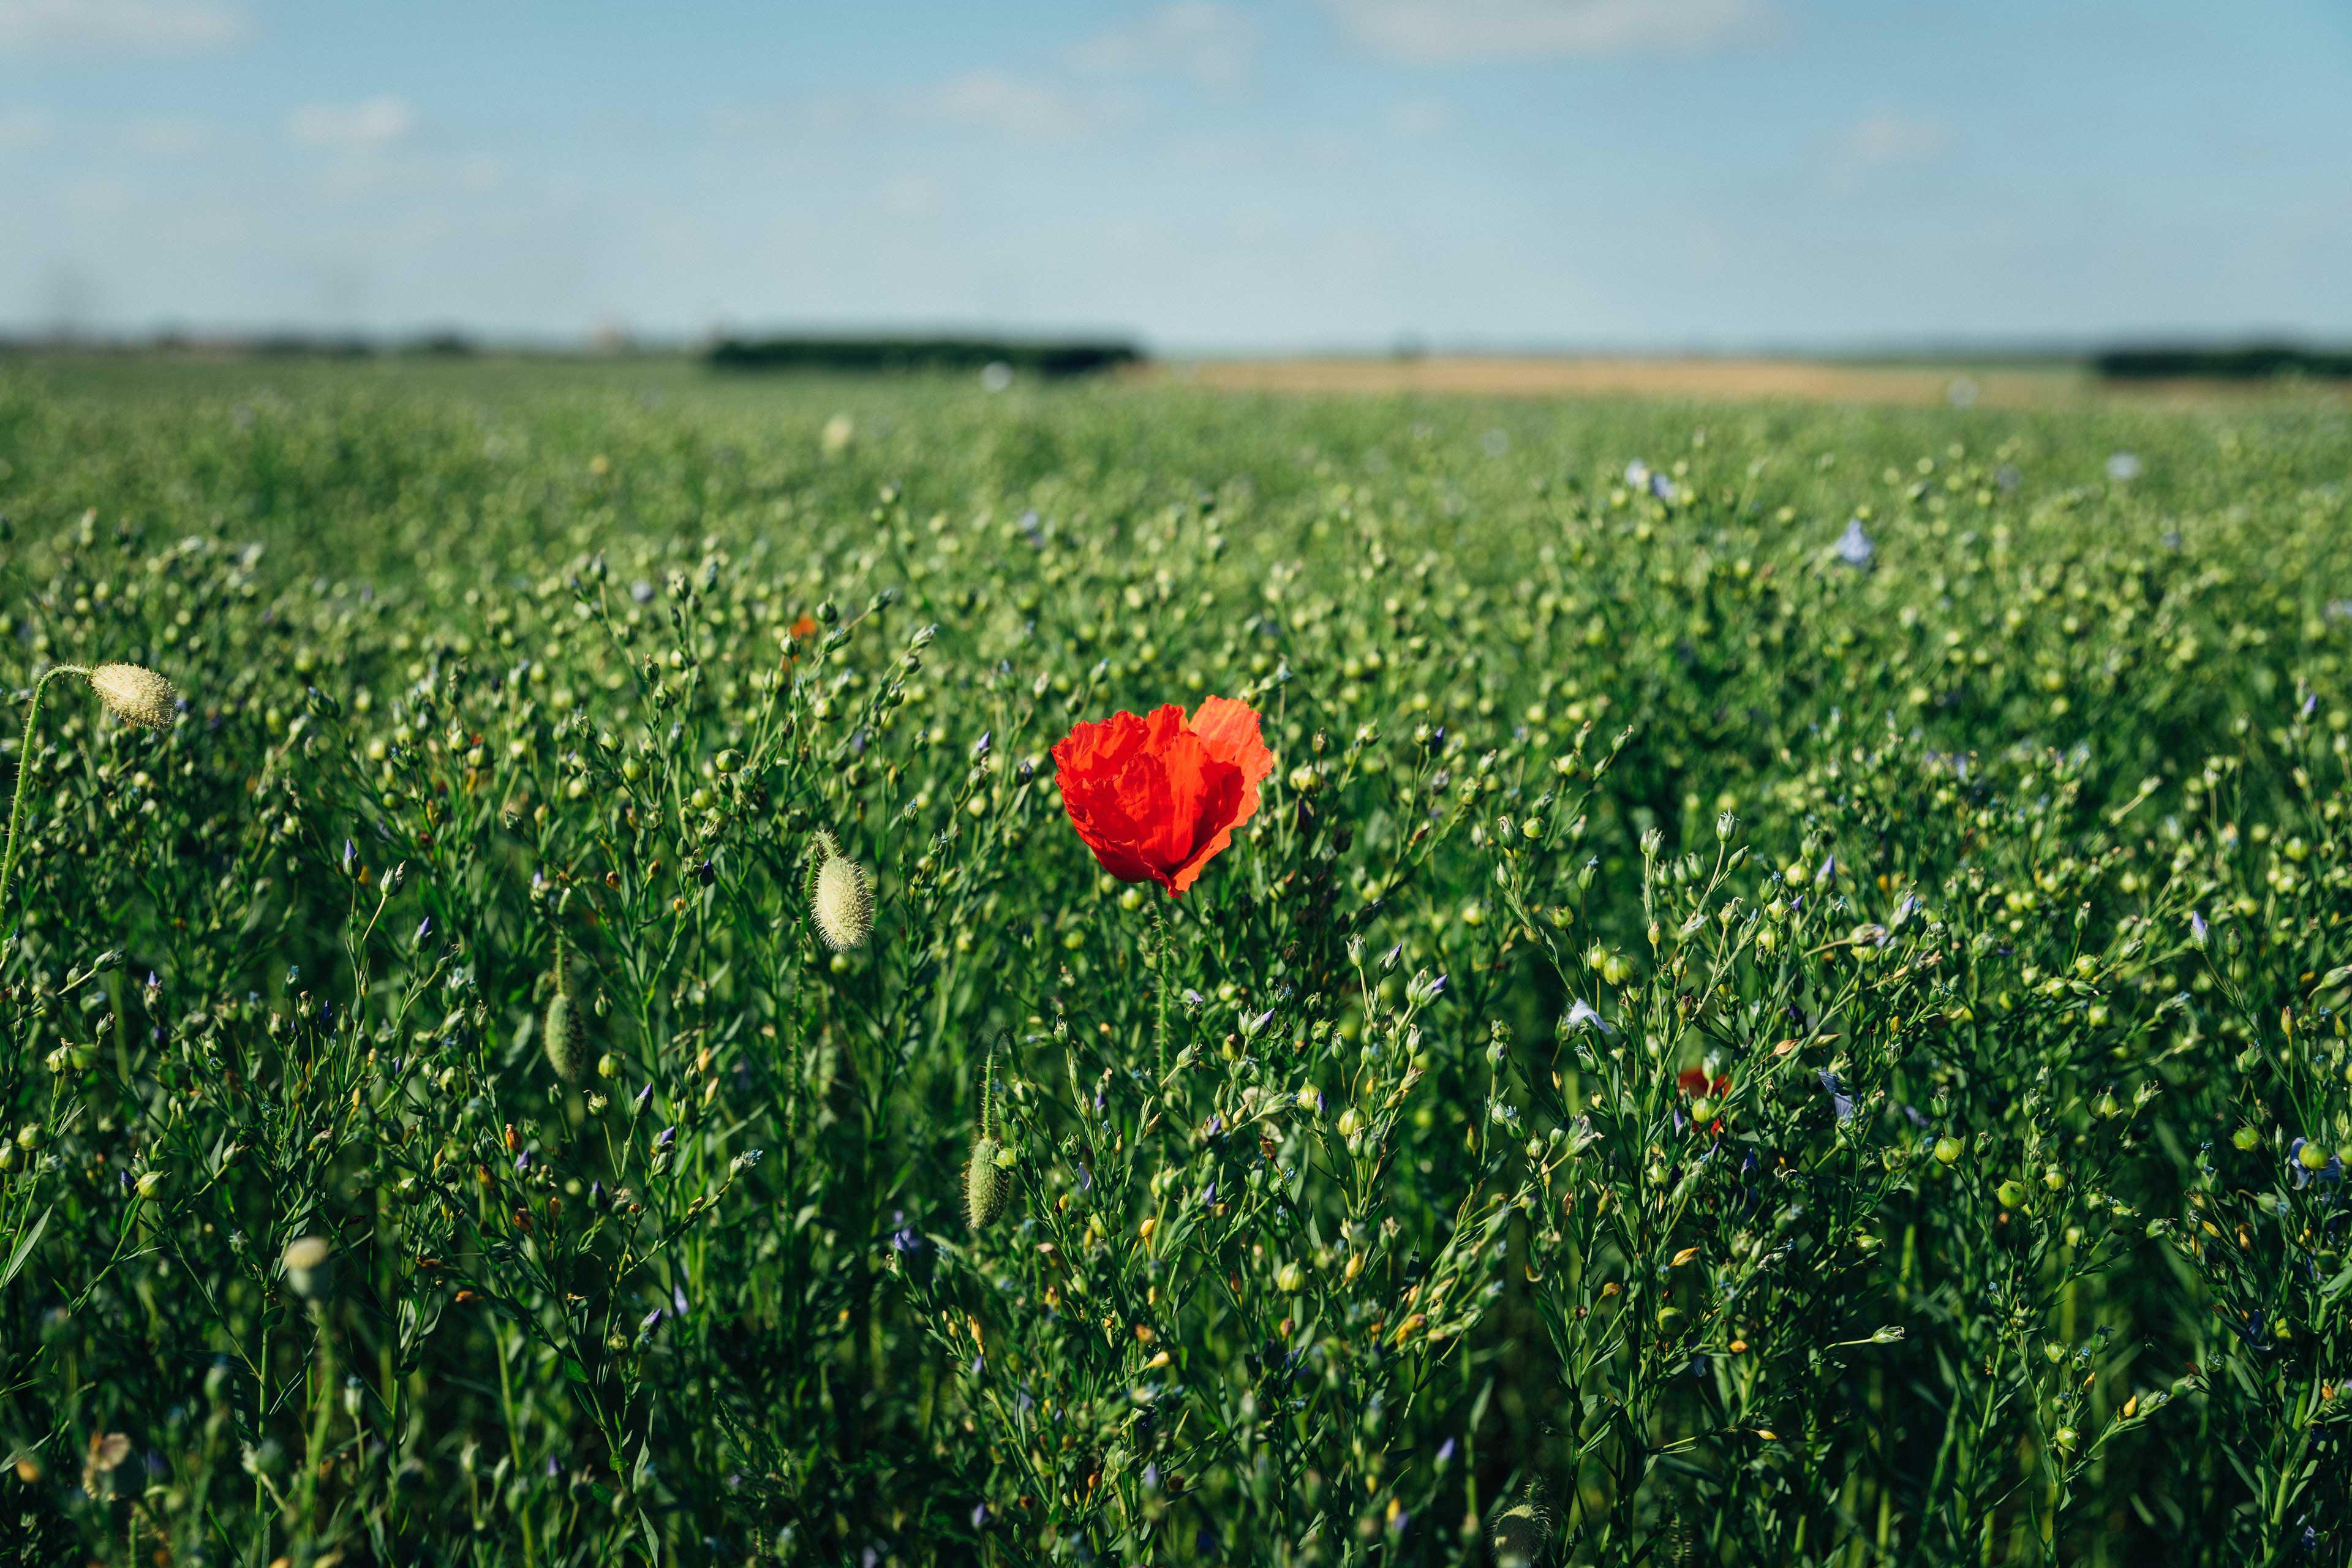 A single red poppy in a green field